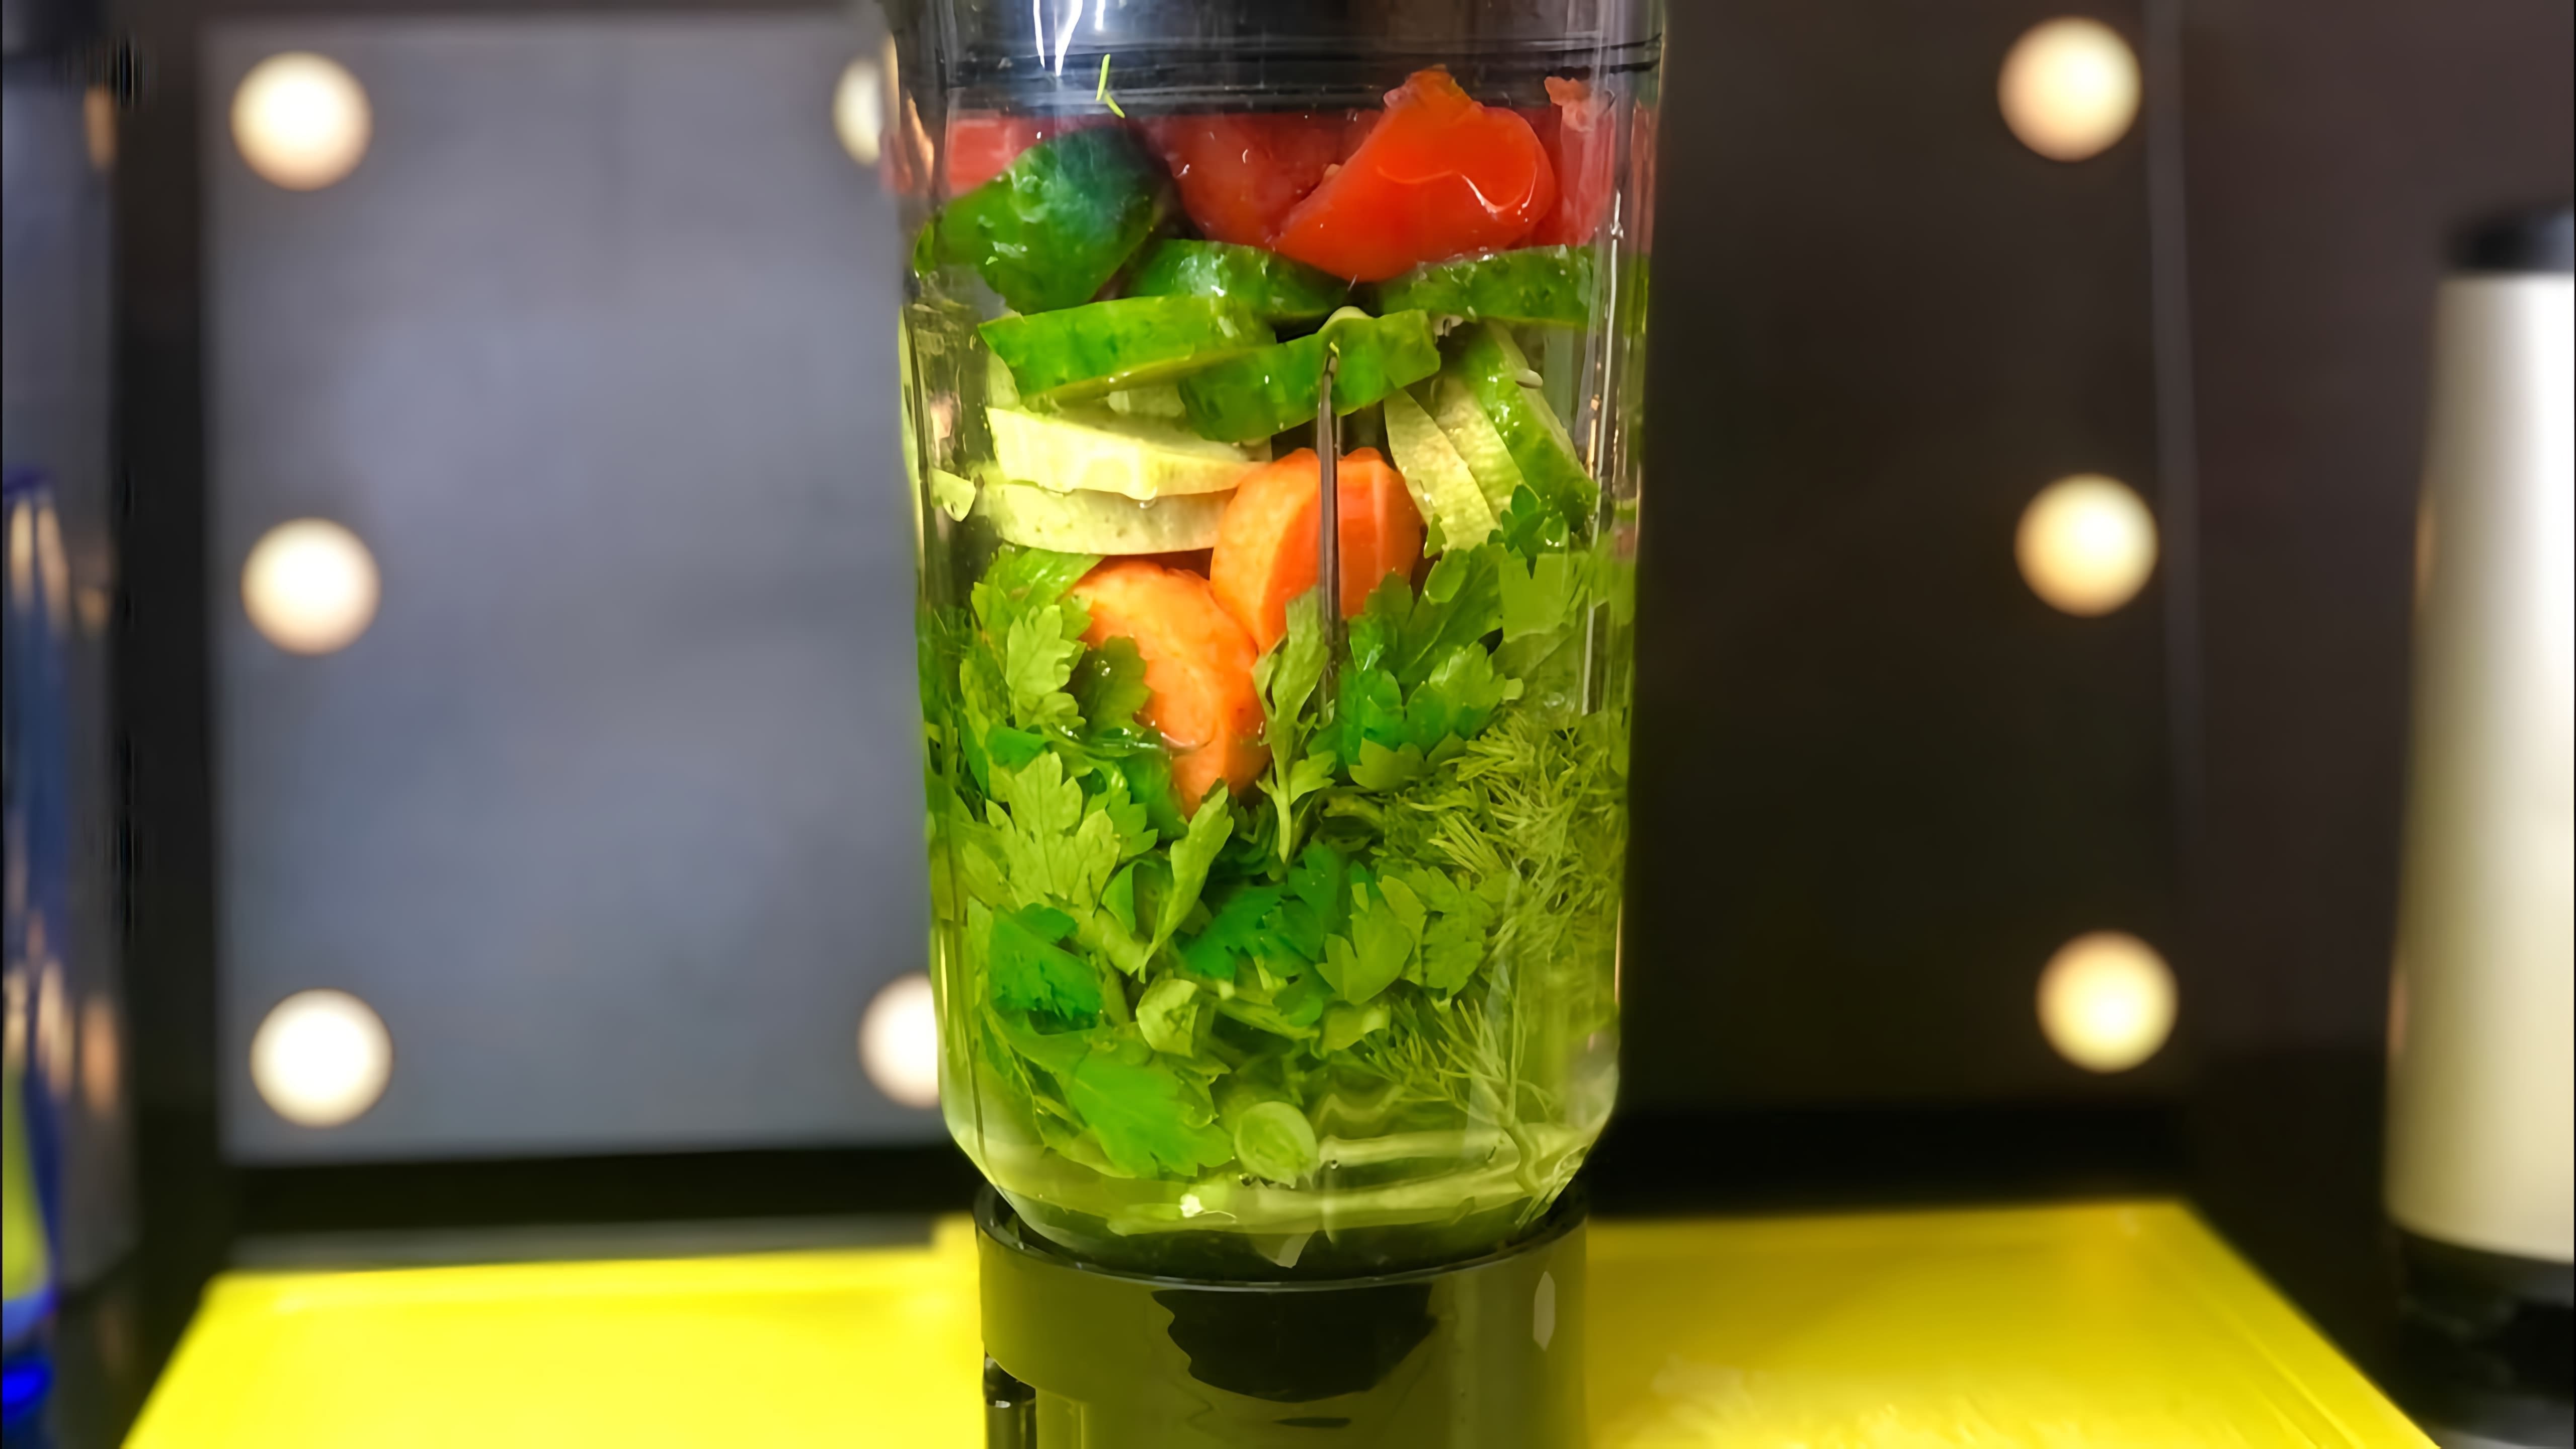 В этом видео рассказывается о пользе и приготовлении зеленого коктейля, который является витаминизированным, полезным и питательным продуктом